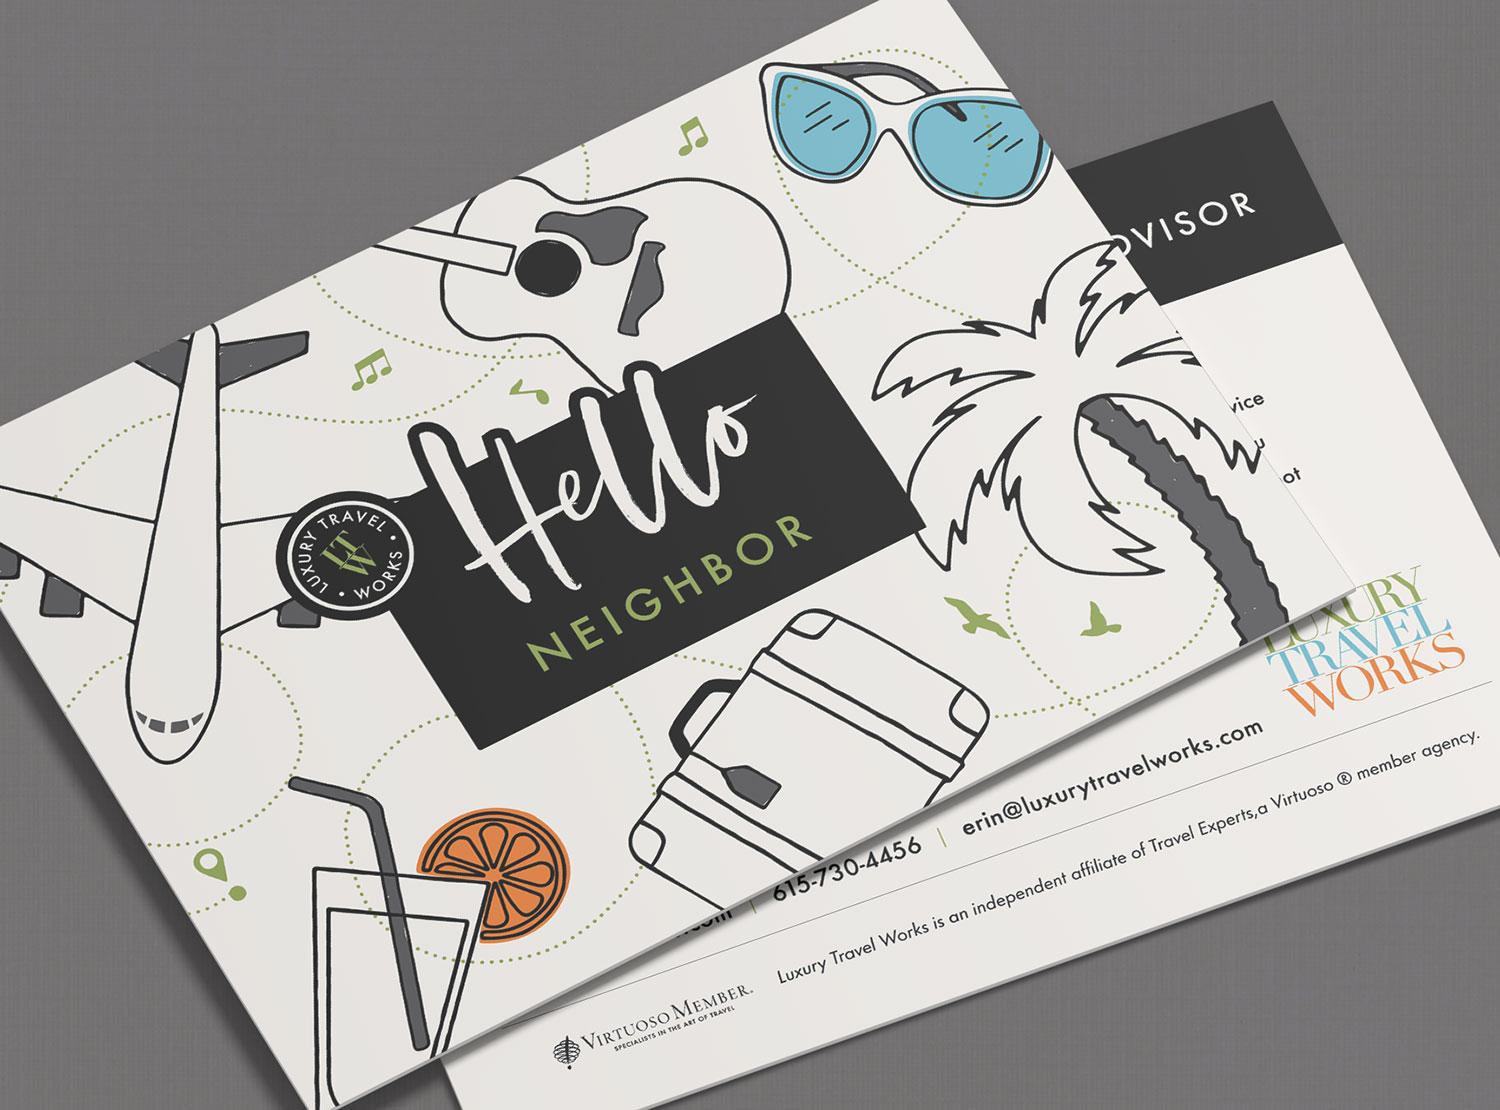 Luxury Travel Postcard Design by Sukalec Designs, Graphic Designer in Nashville TN